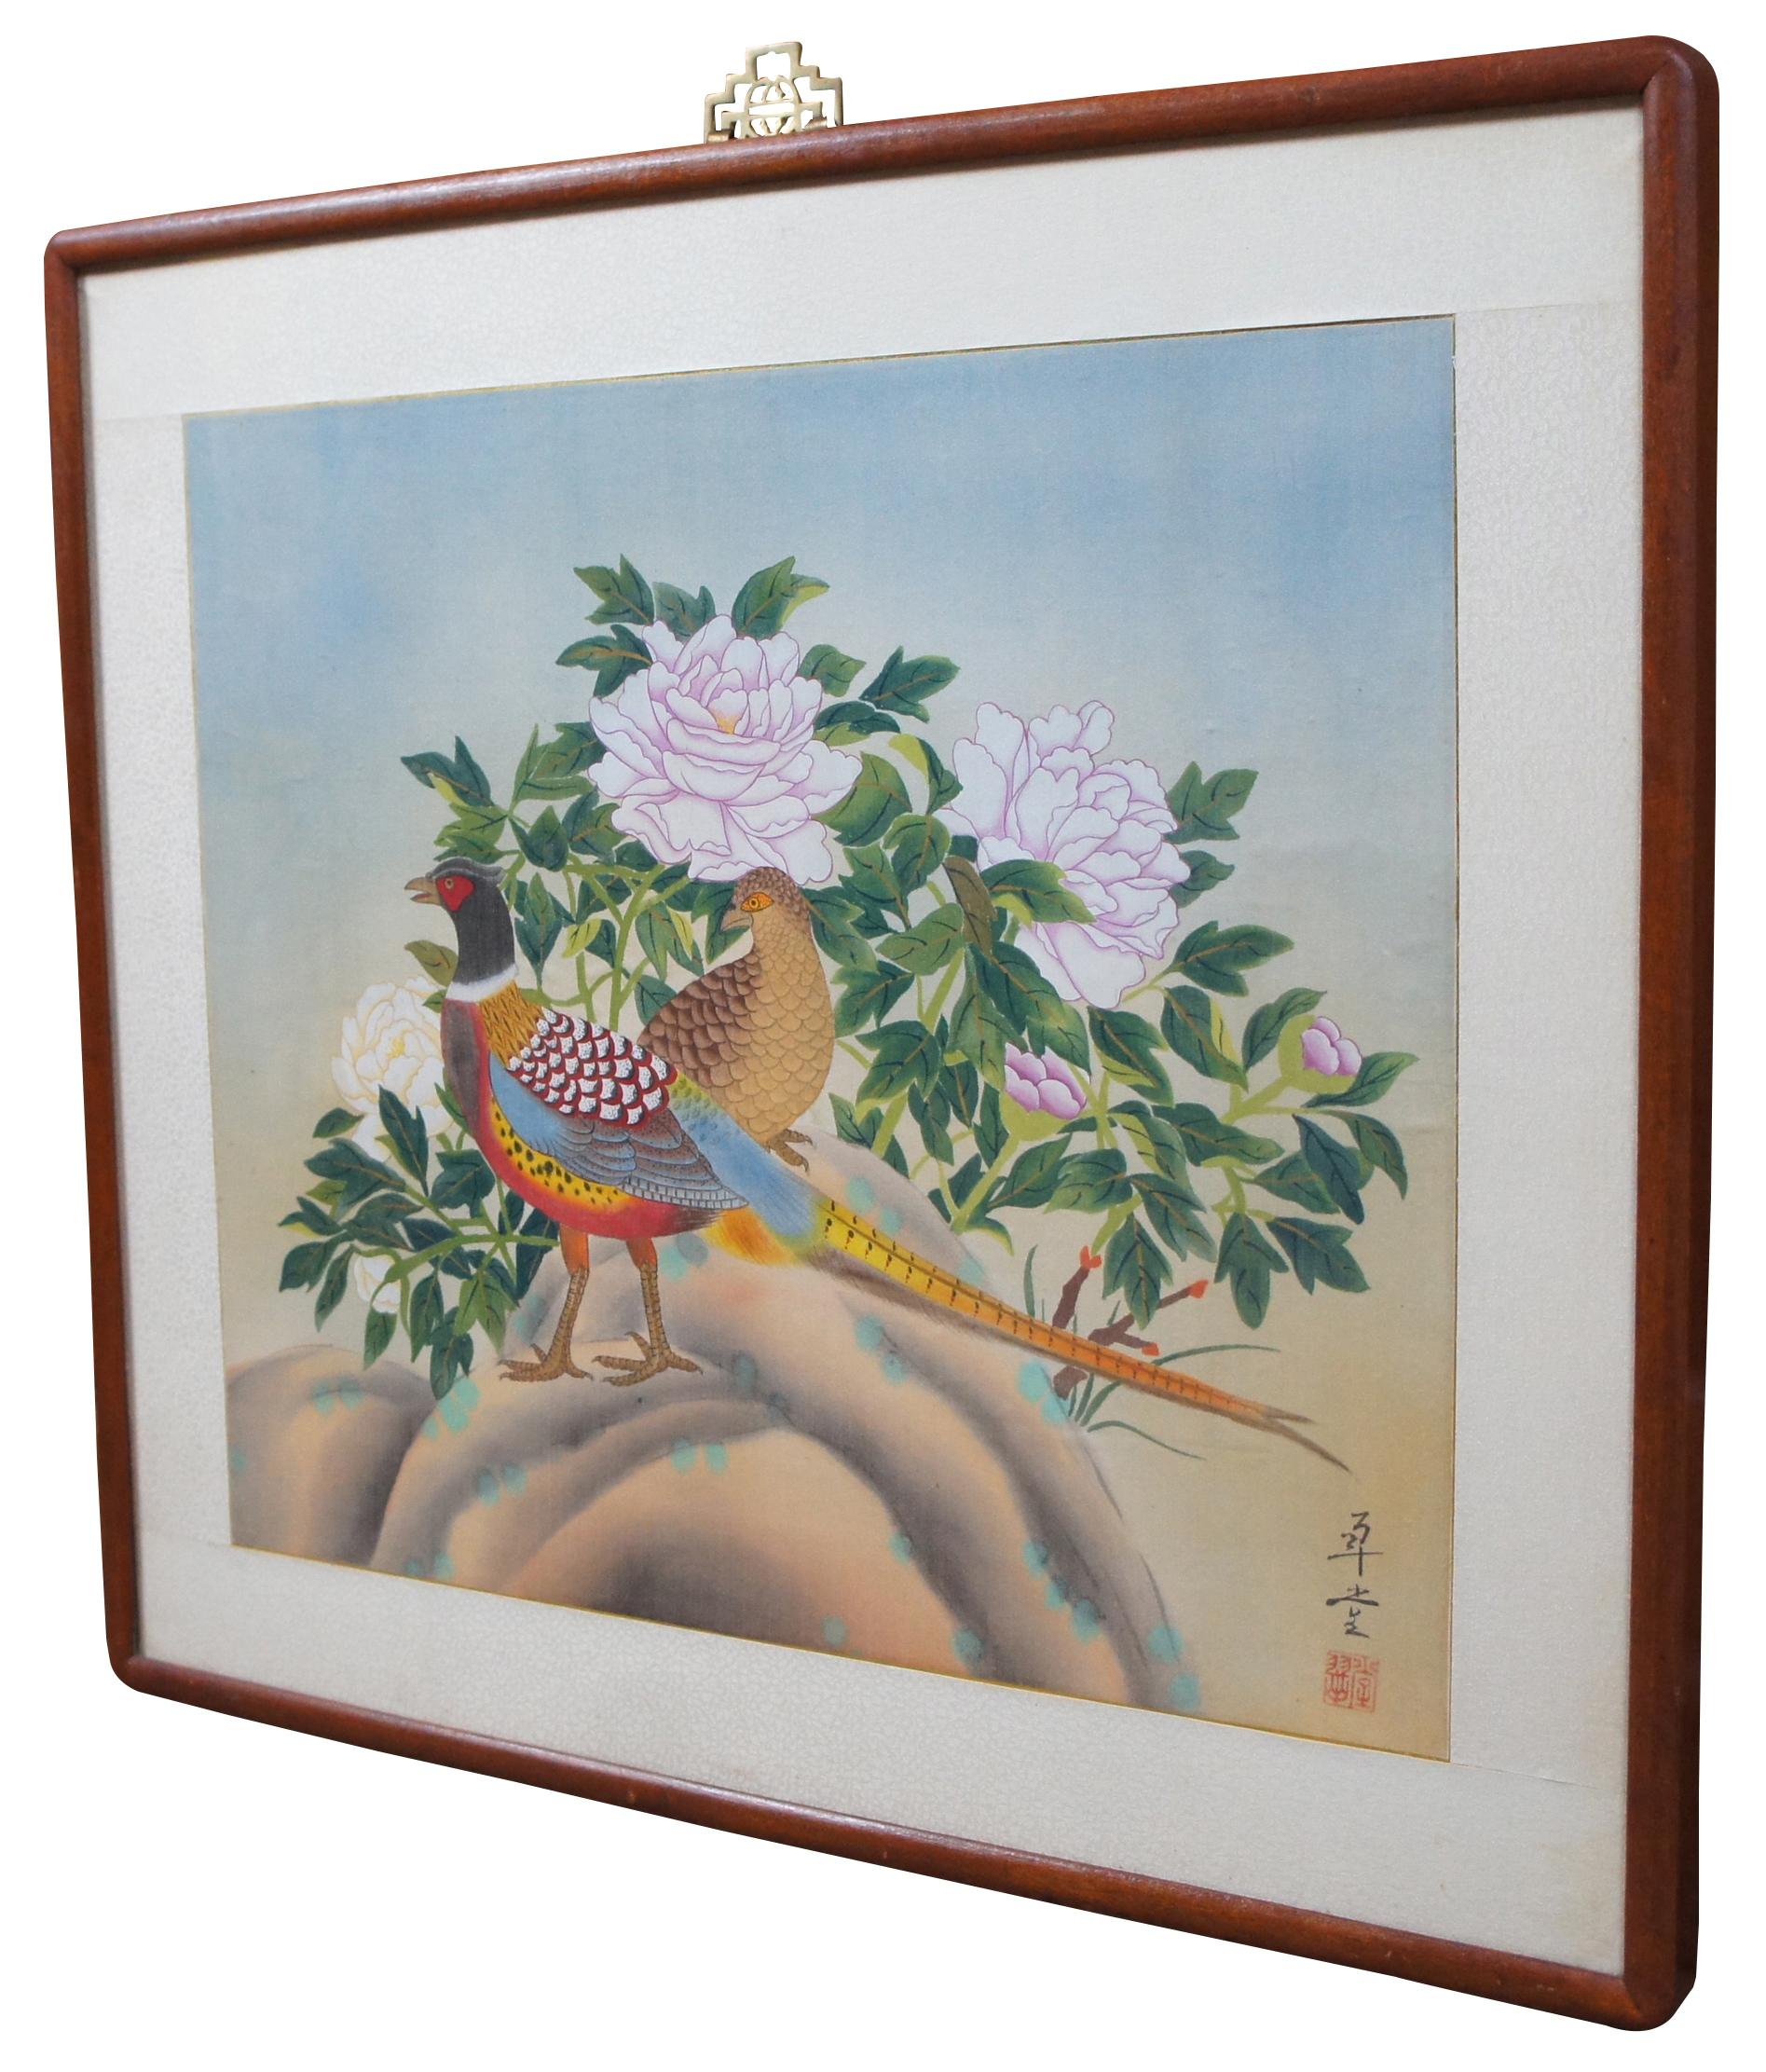 1979 Cui Tang Chiense / peinture coréenne sur soie représentant des faisans mâles et femelles aux couleurs vives devant un buisson de pivoines roses et blanches.

1 ? ? huà tí Titre de l'art 
2 ?? (coréen) N/A 1. fil d'or 2. relation conjugale